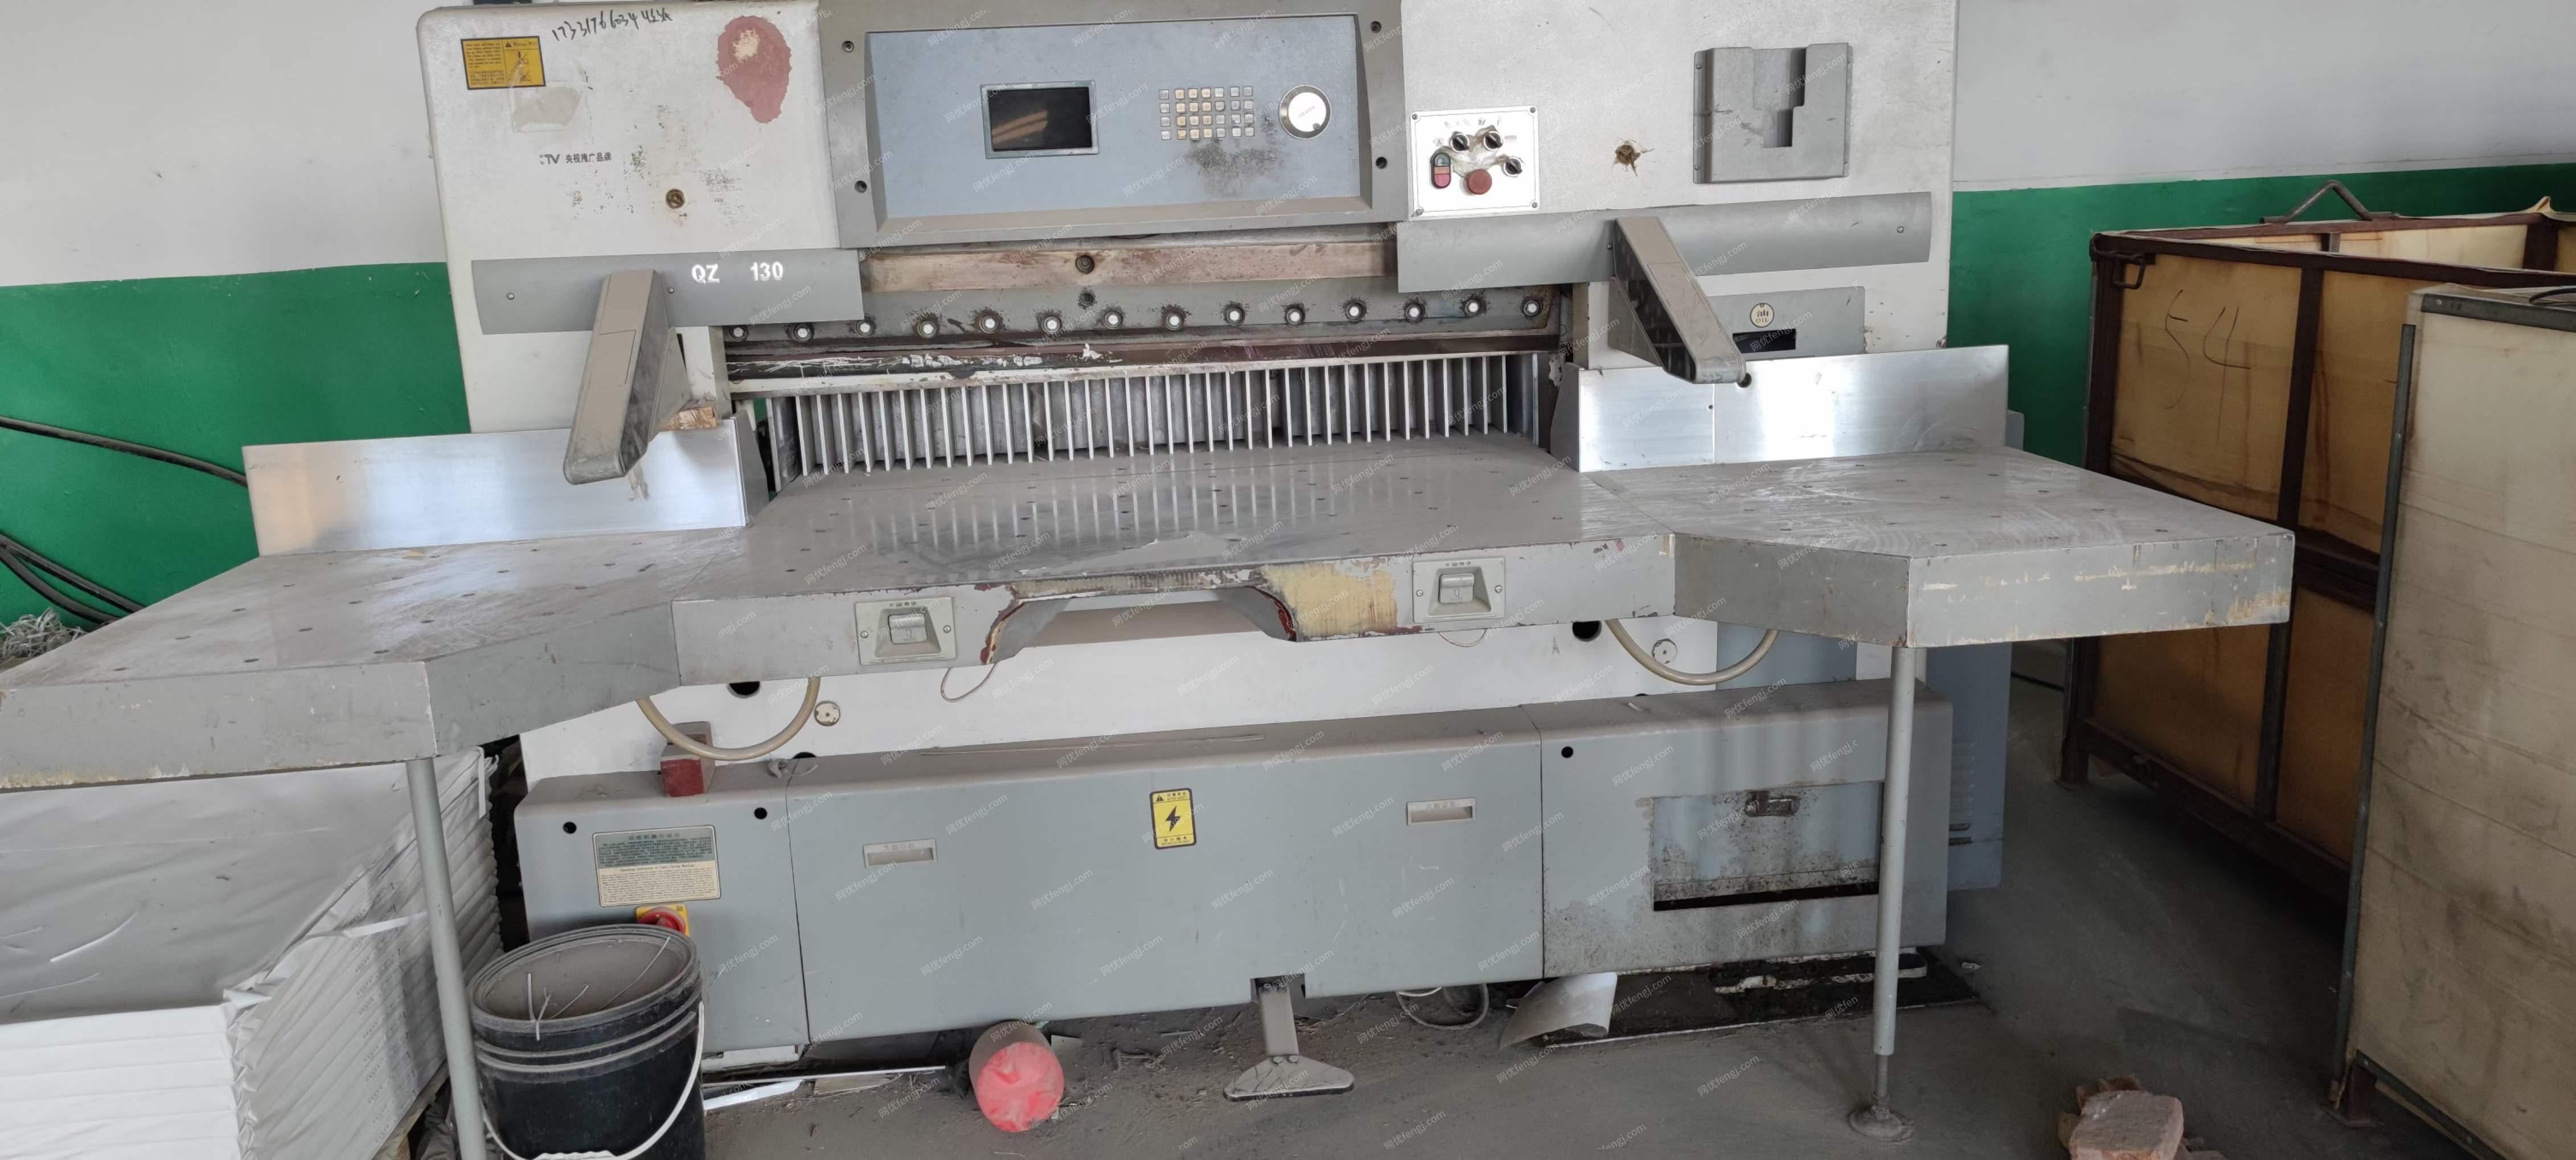 印刷厂处理14年瑞安1300全自动切纸机（带3块刀片），处理价3万，11年滨田4色6开印刷机，处理价3-4万，有图